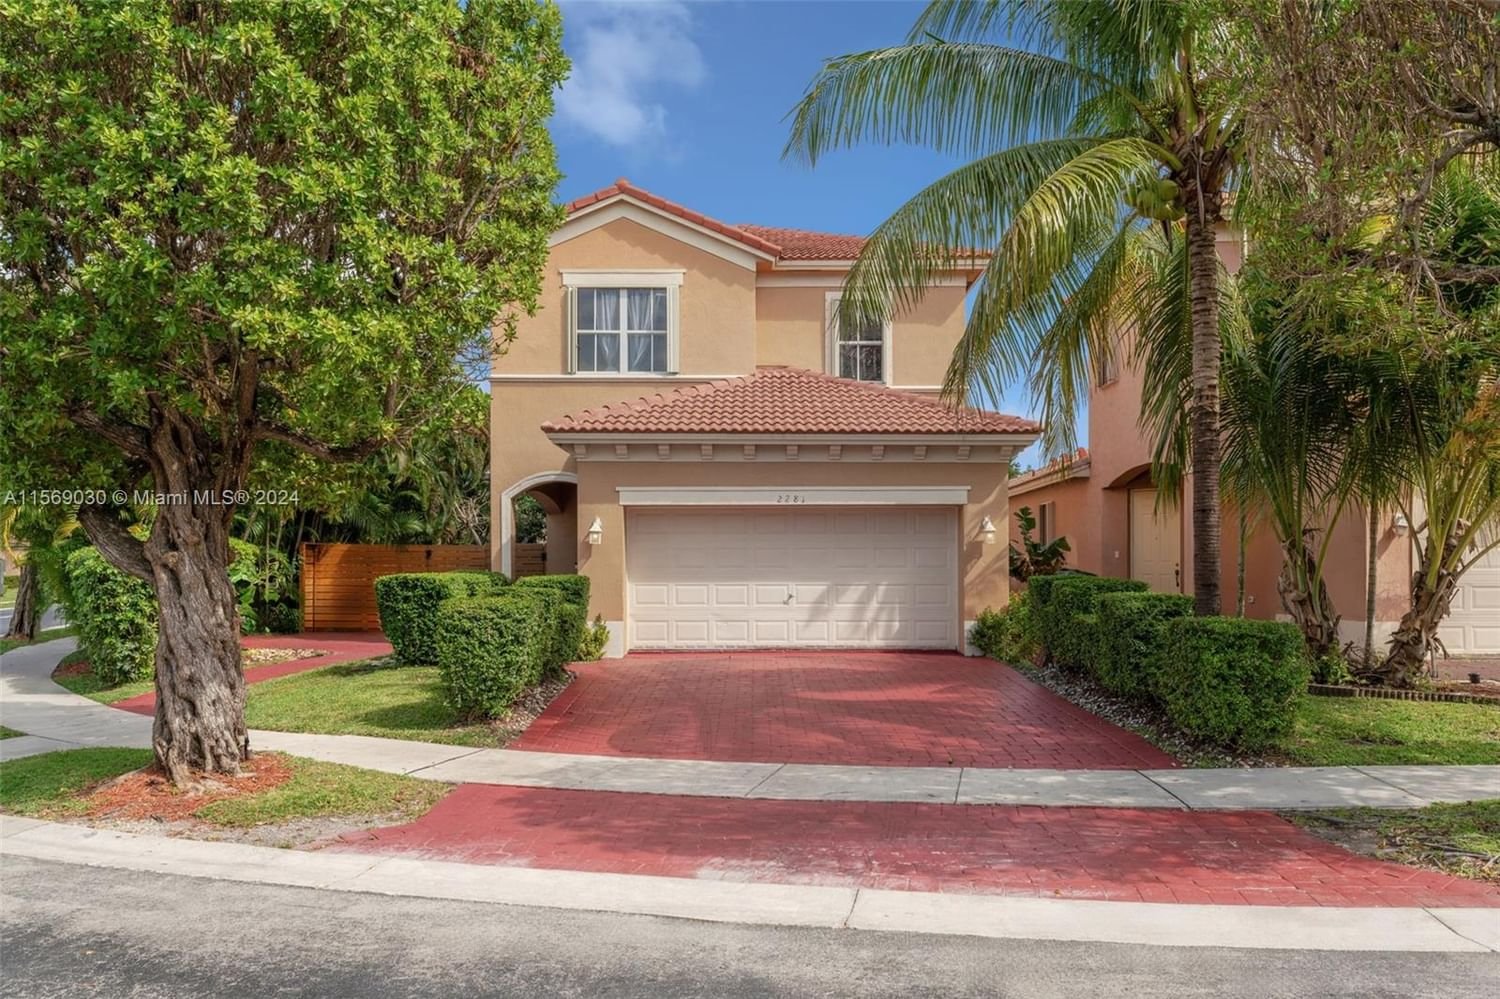 Real estate property located at 2281 37th Ter, Miami-Dade County, PORTOFINO BAY, Homestead, FL